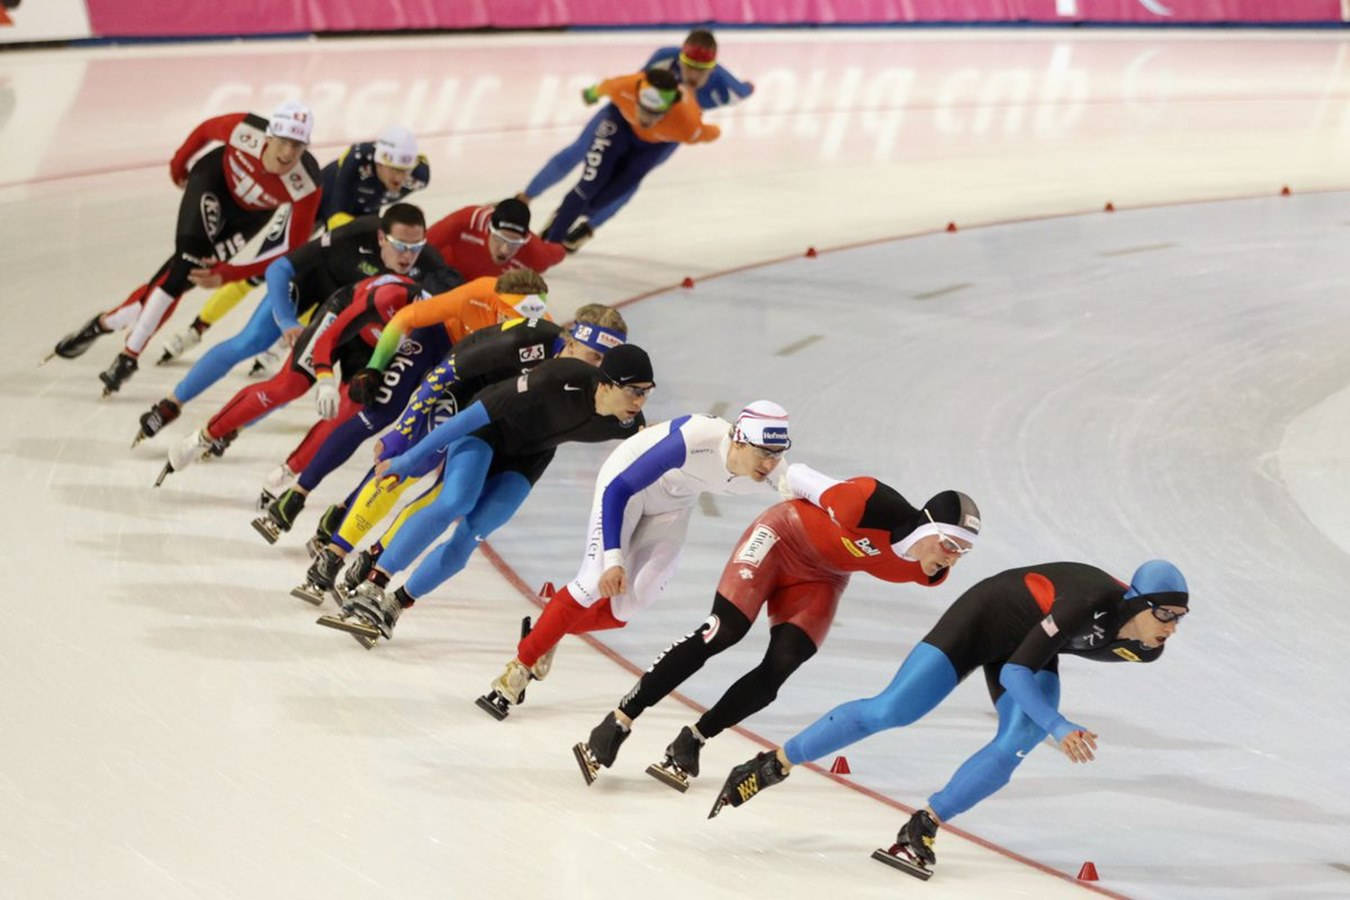 race around a sharp icy bend : Olympiske sport Kurzstrecke Eisschnellläuferrennen um eine scharfe, eisige Kurve. Wallpaper